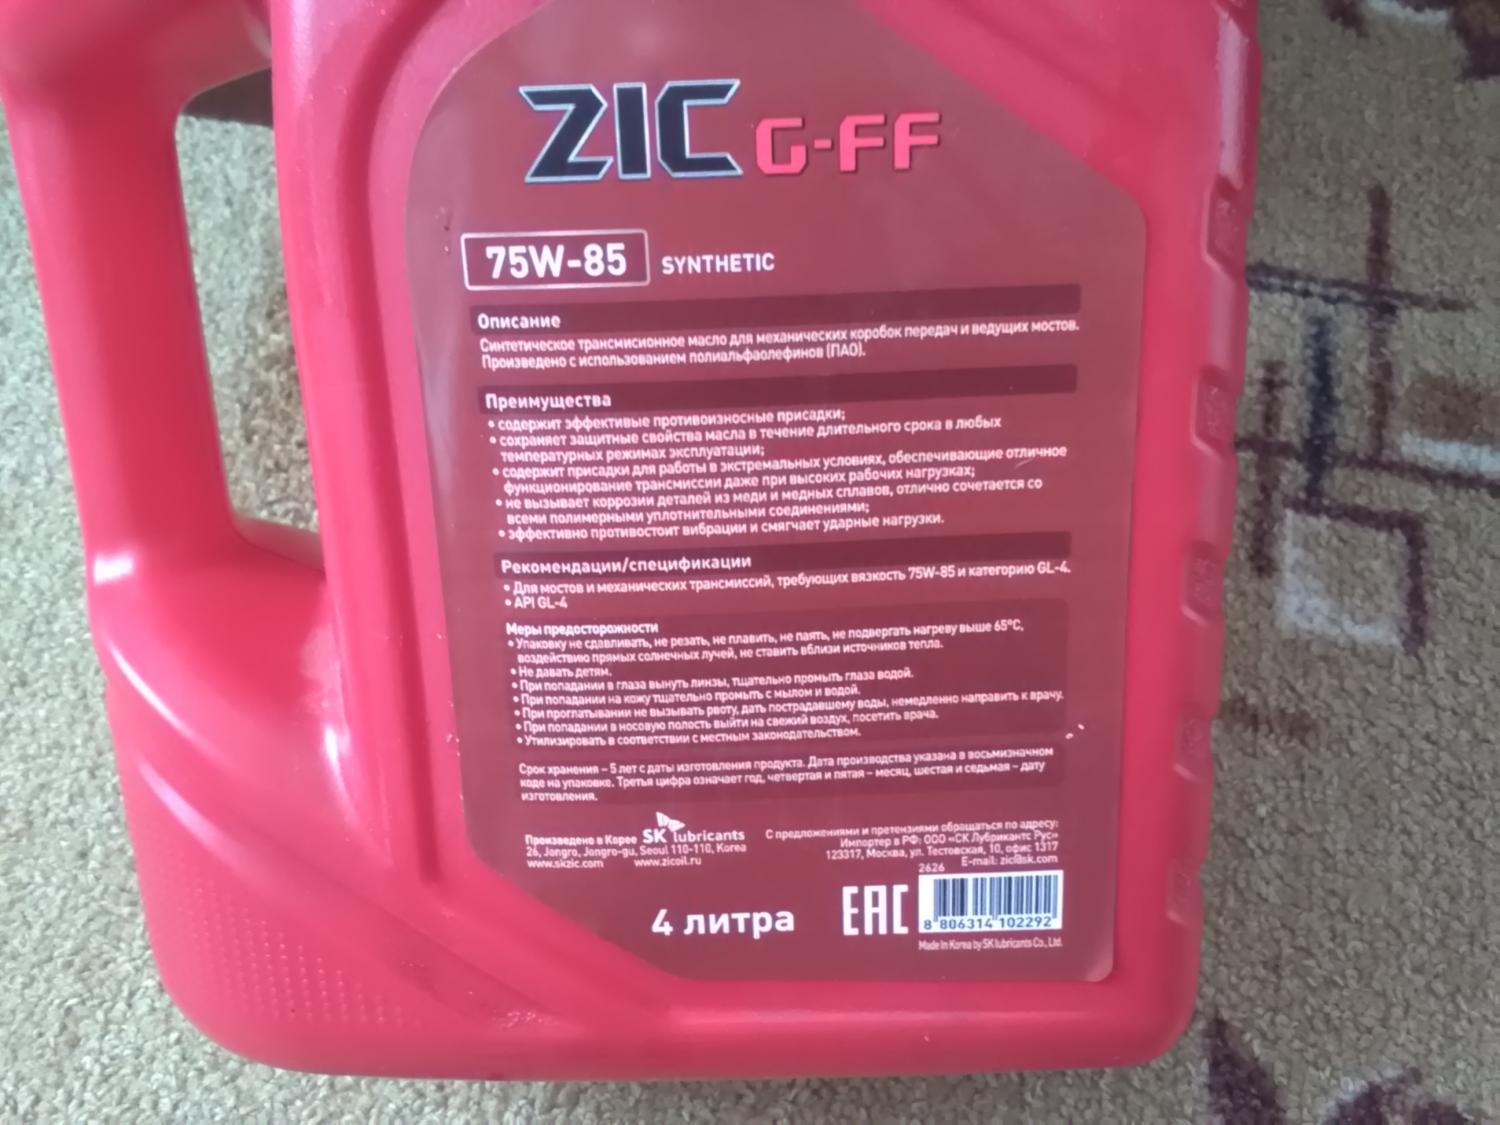 Gff 75w85. Зик GFF 75w85. Suzuki super Gear Oil 75w-85 Synthetic. ZIC этикетка задняя.